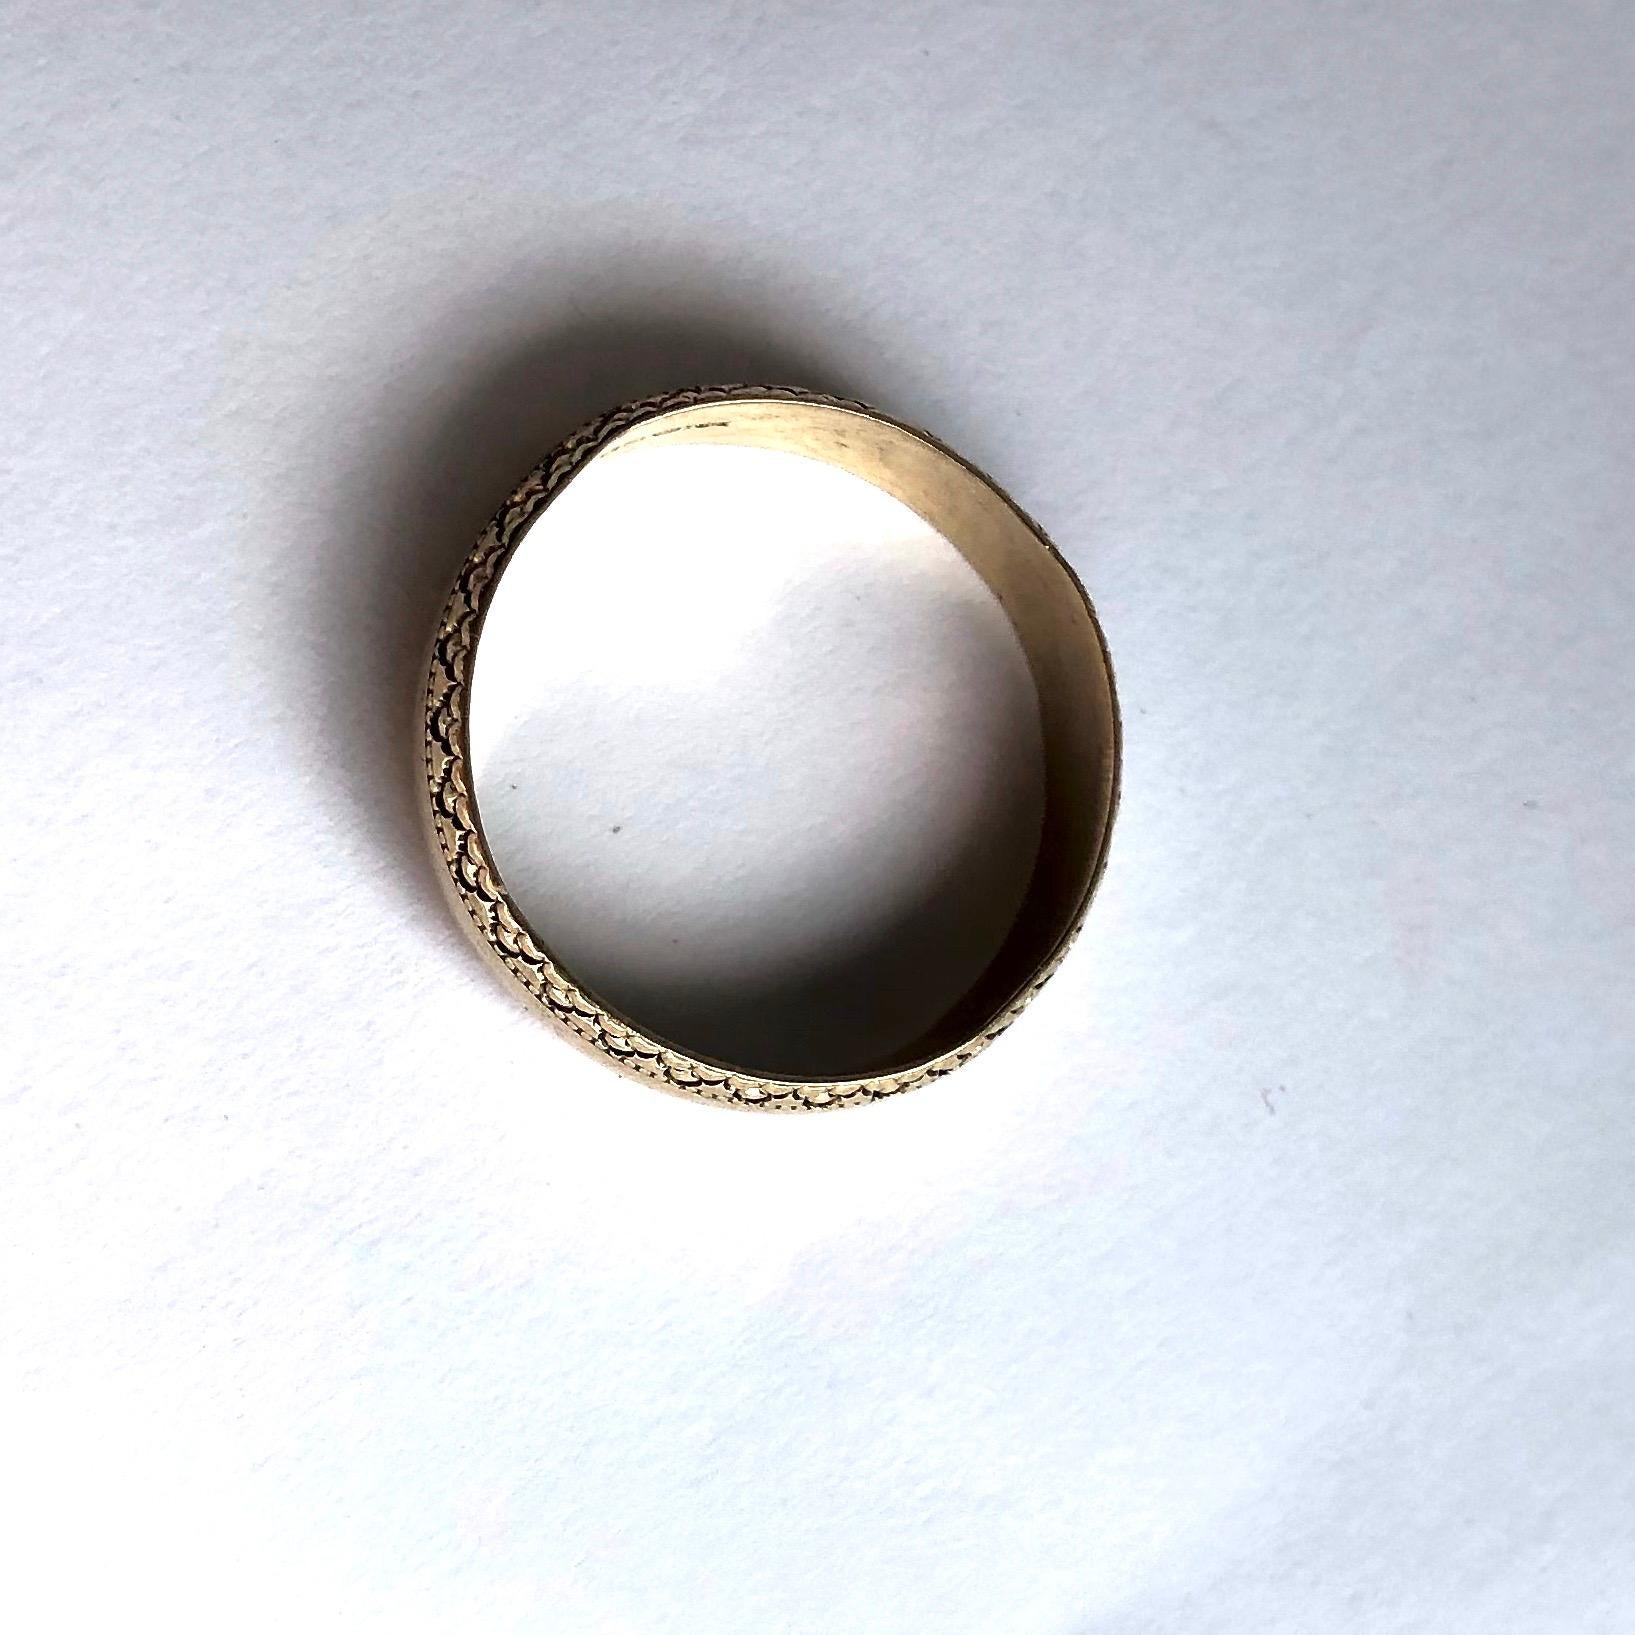 Das 9-karätige Goldband ist an beiden Außenkanten mit einem ausgefallenen Design graviert. 

Ringgröße: P oder 7 1/2 
Bandbreite: 5mm

Gewicht: 2,44g